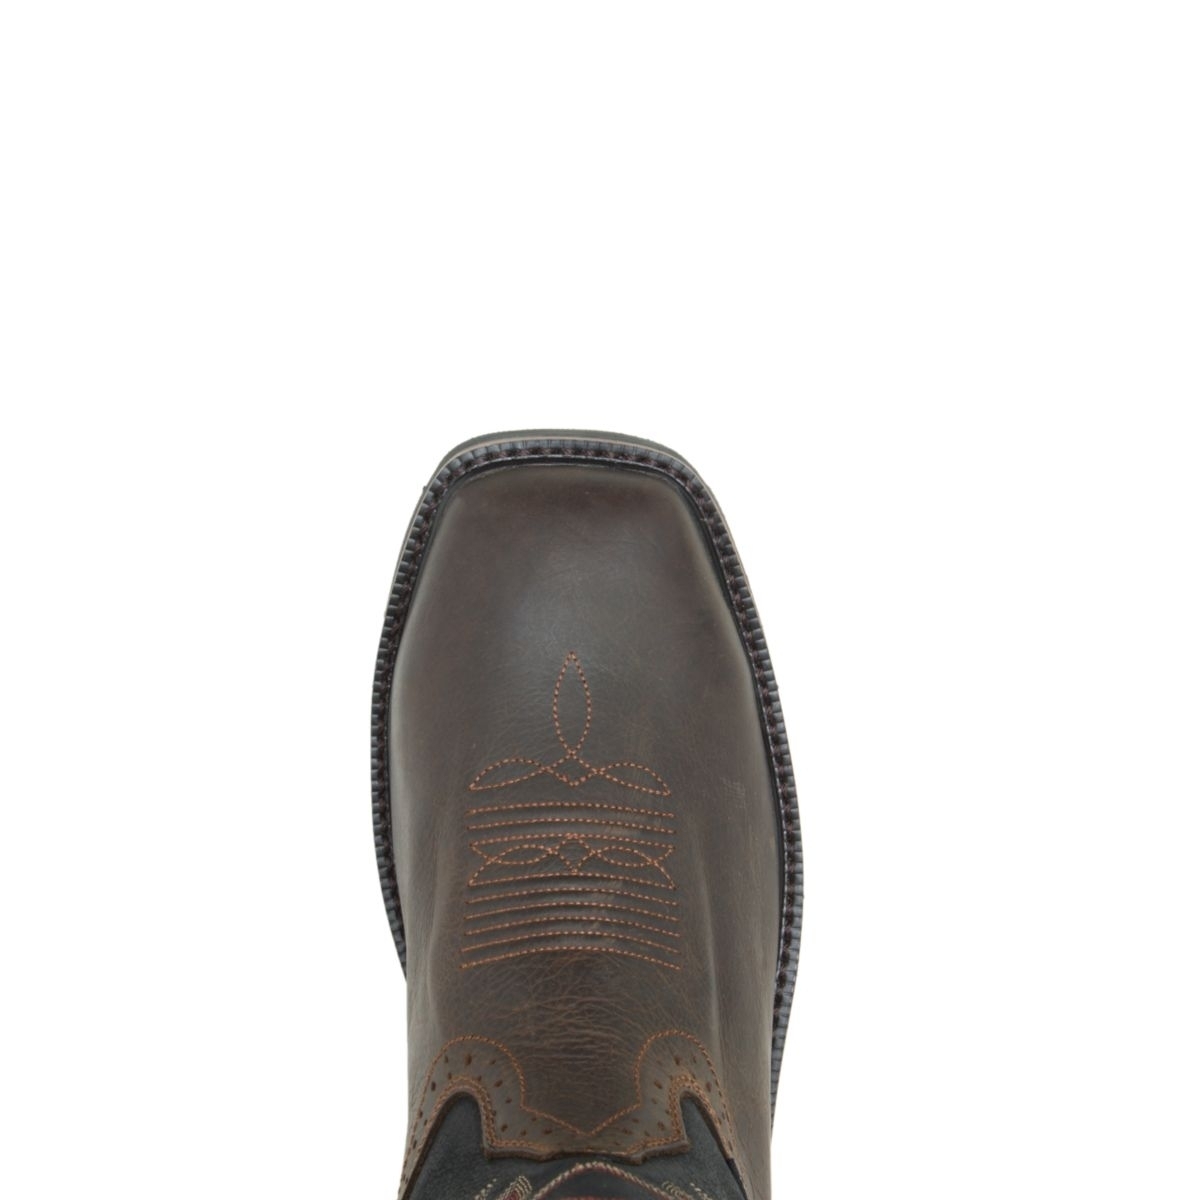 WOLVERINE Mens Rancher Waterproof Soft Toe Wellington Work Boot Black/Brown - W10768 varies BLACK/BROWN